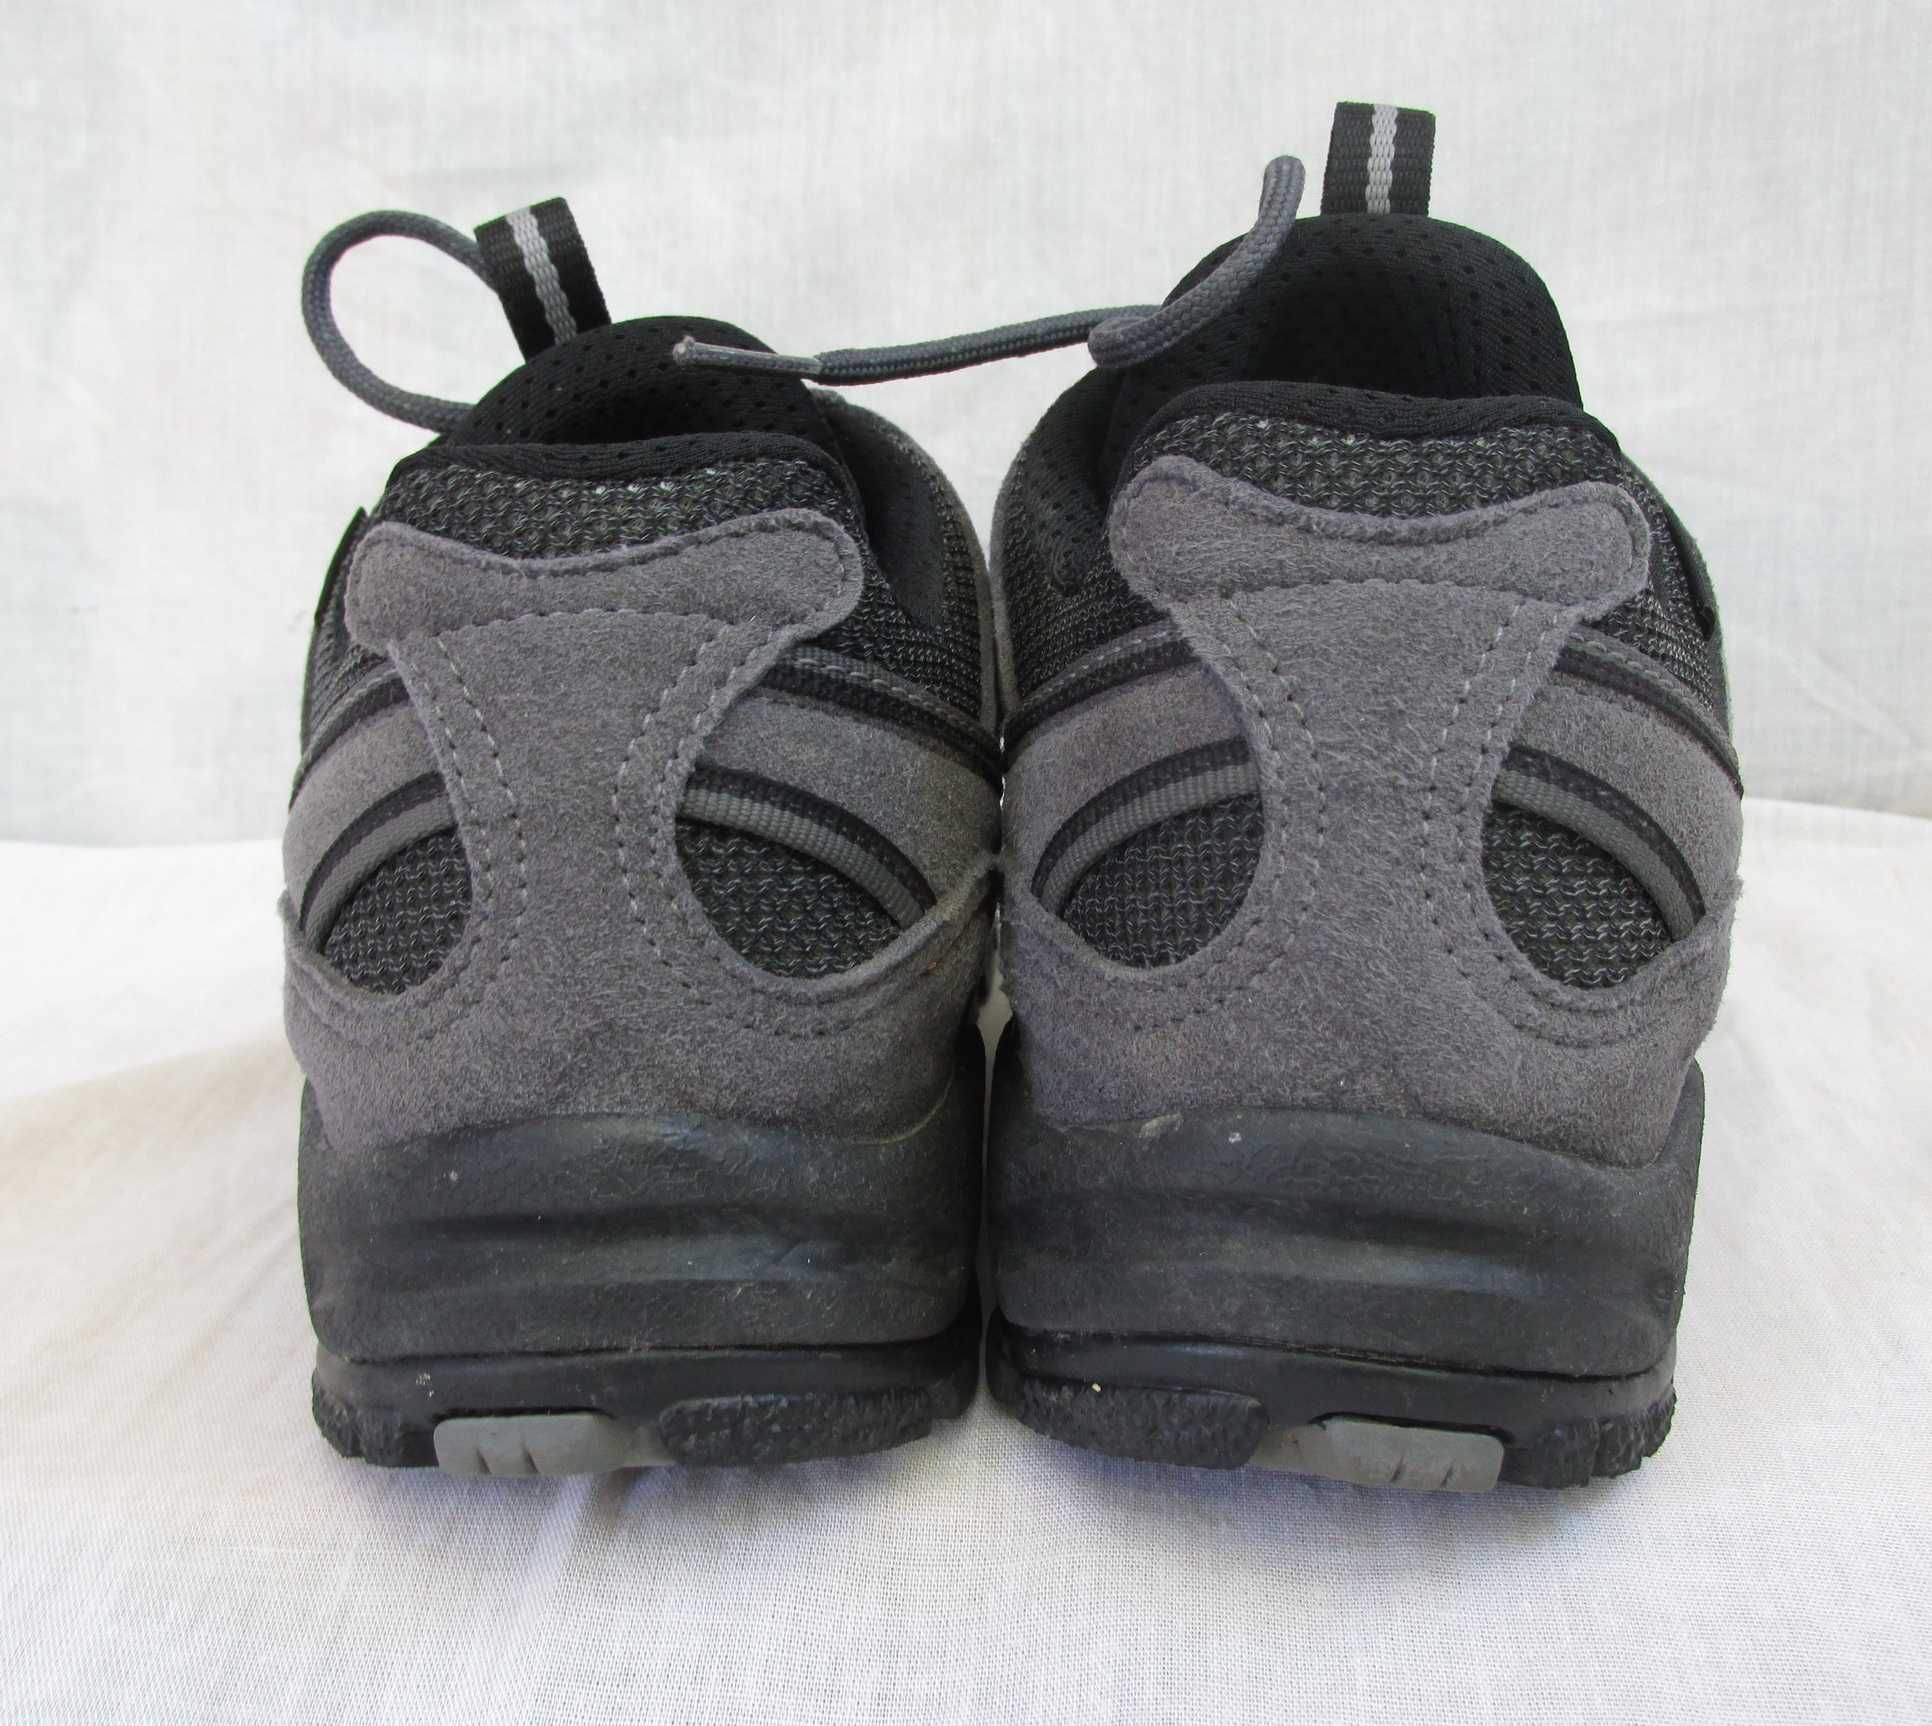 Pantofi/ghete drumetie Hanwag original,marime 38,5-39 (25 cm)